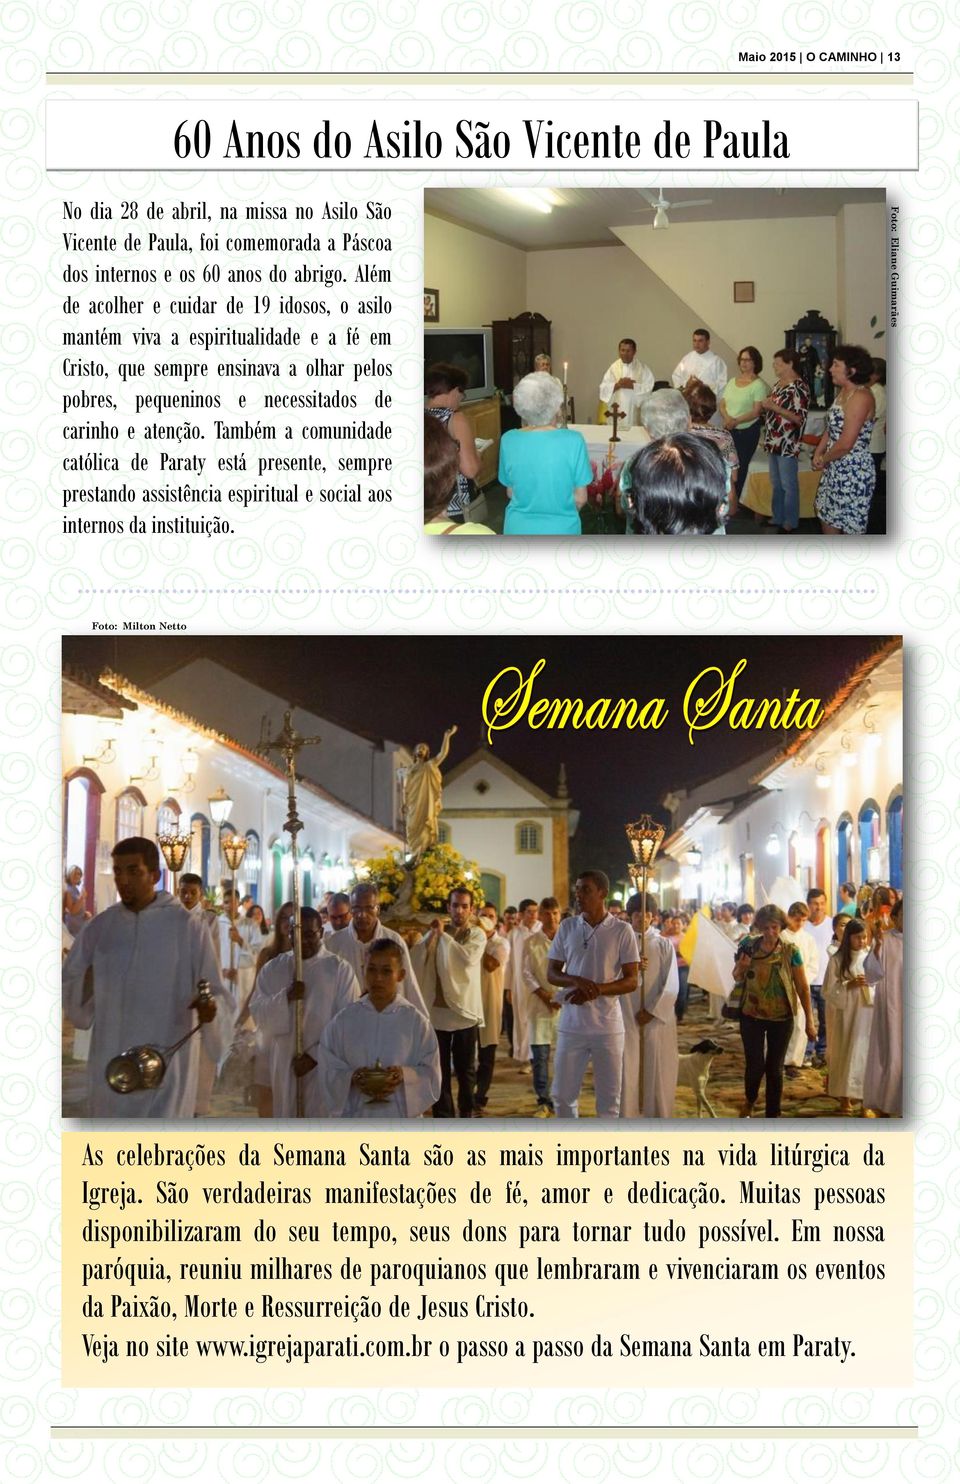 Também a comunidade católica de Paraty está presente, sempre prestando assistência espiritual e social aos internos da instituição.